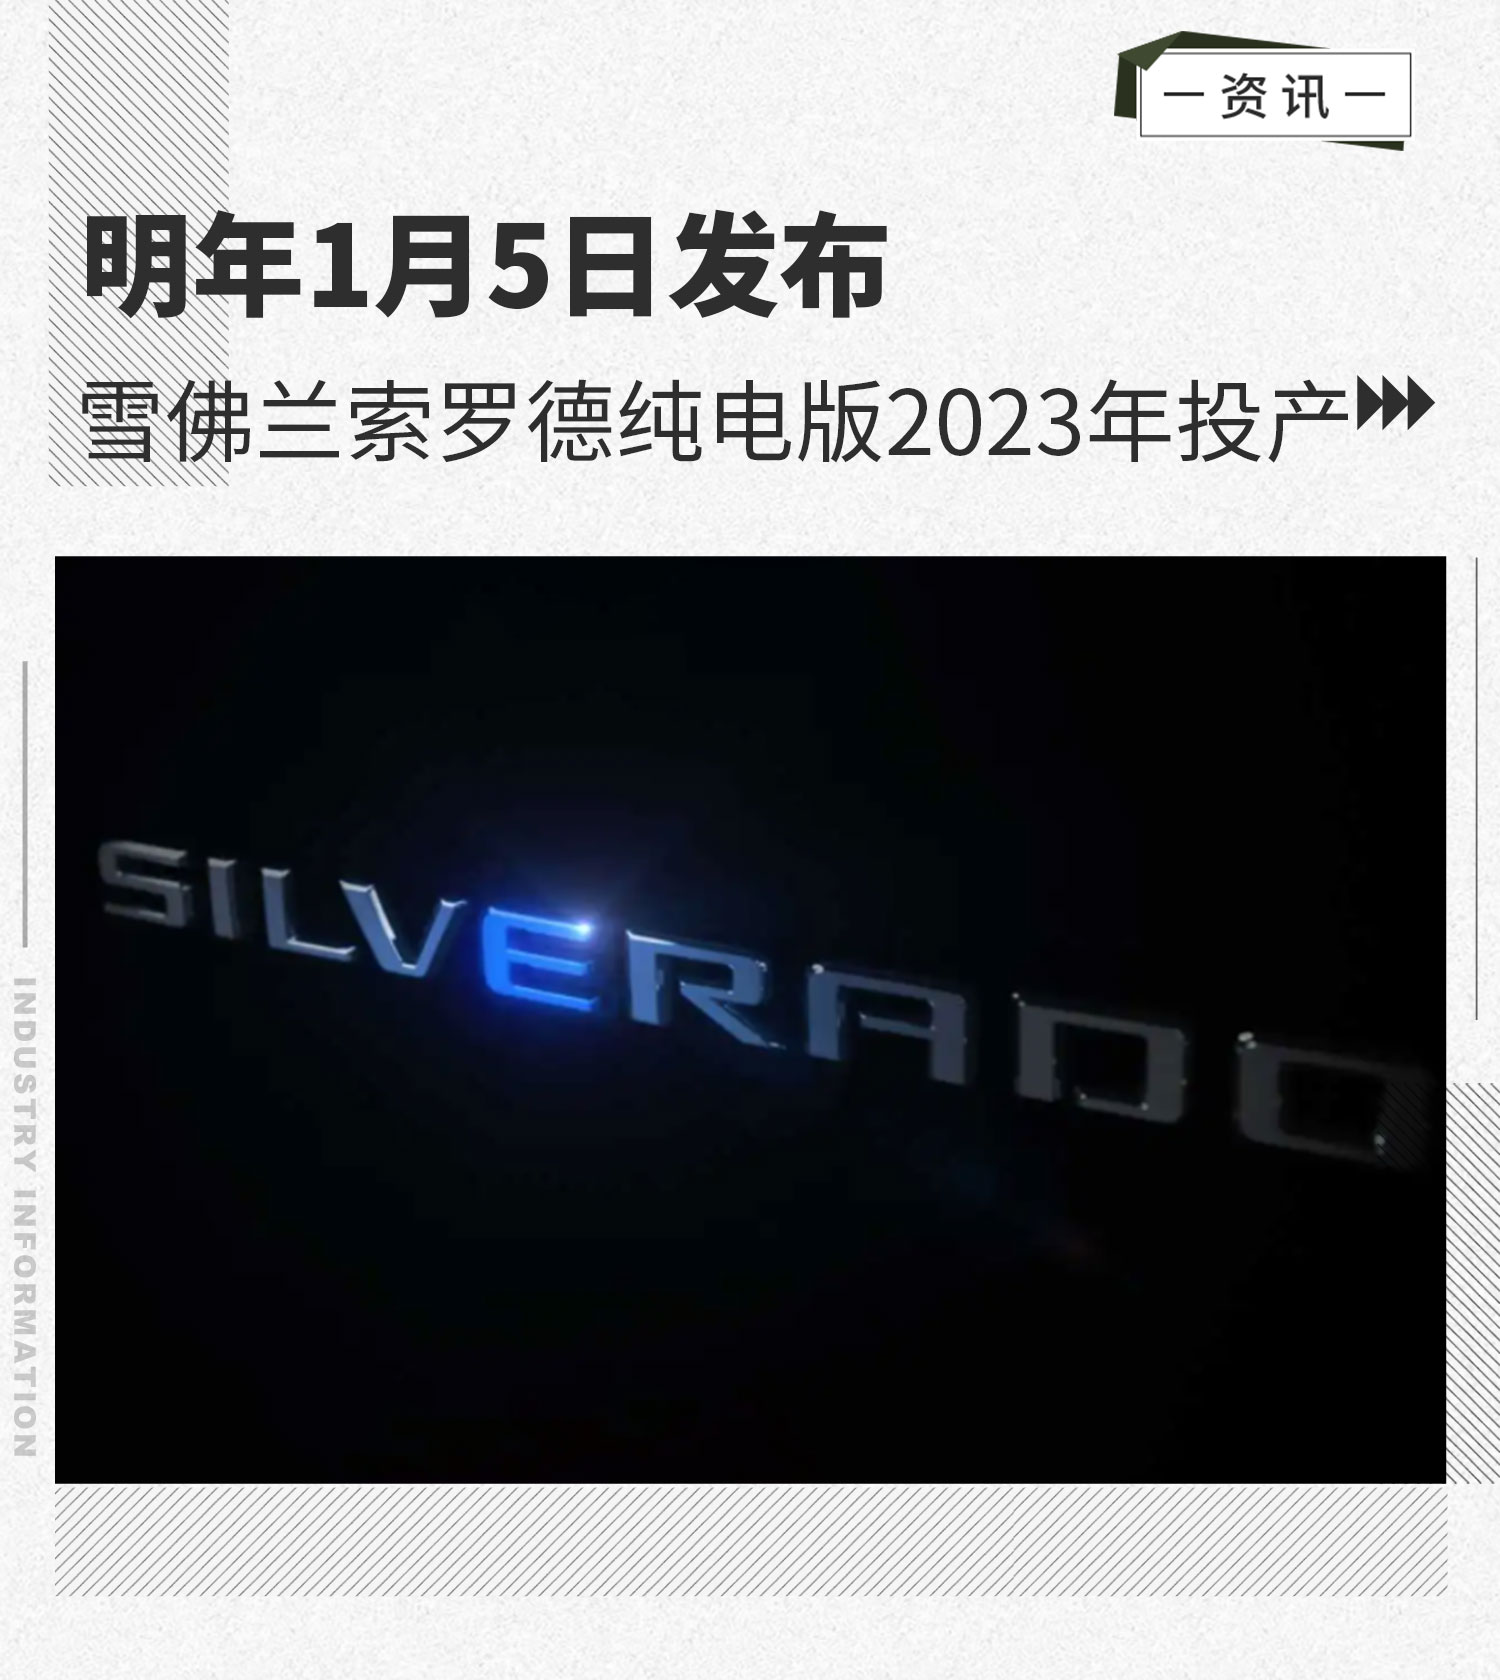 明年1月5日发布 雪佛兰索罗德纯电版2023年投产